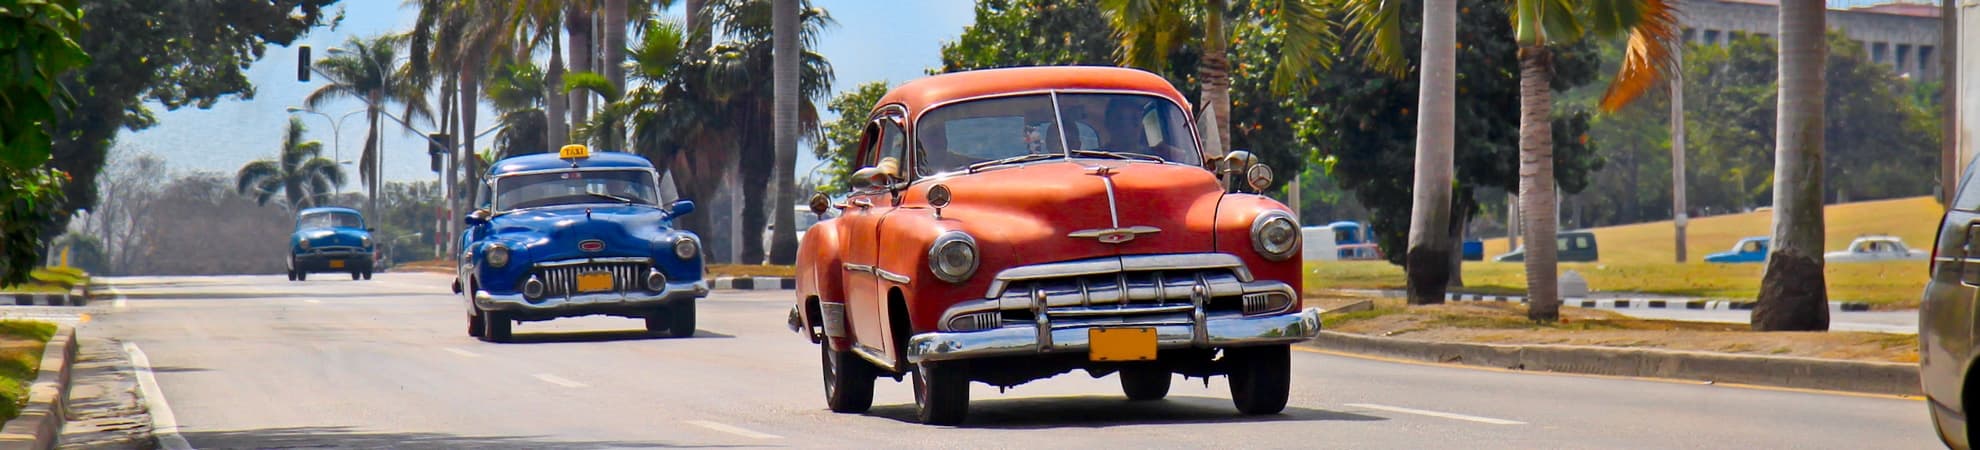 Autotours Cuba